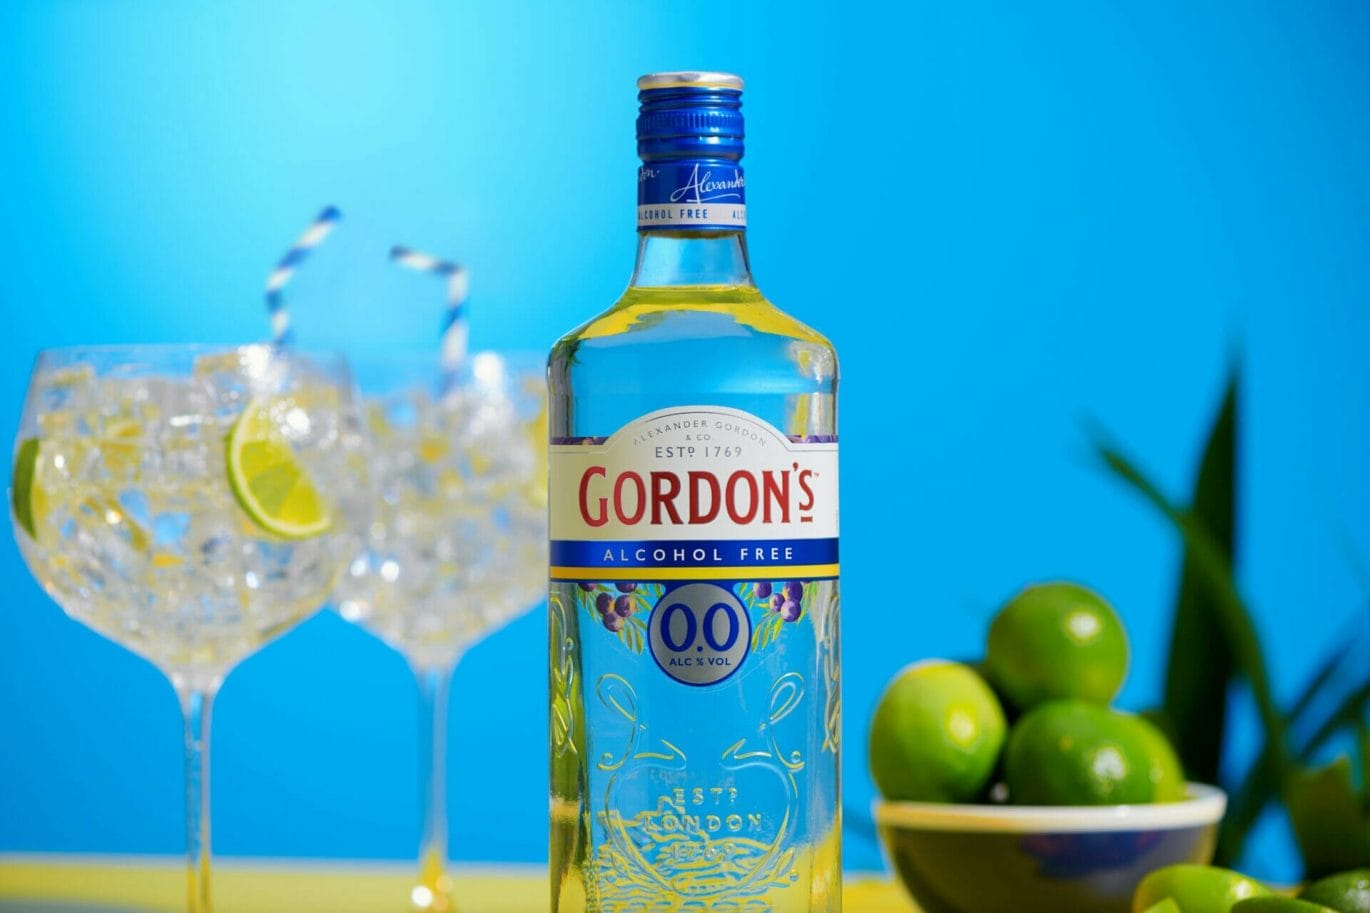 Met Gordon's 0.0% maak je een alcoholvrije gin-tonic